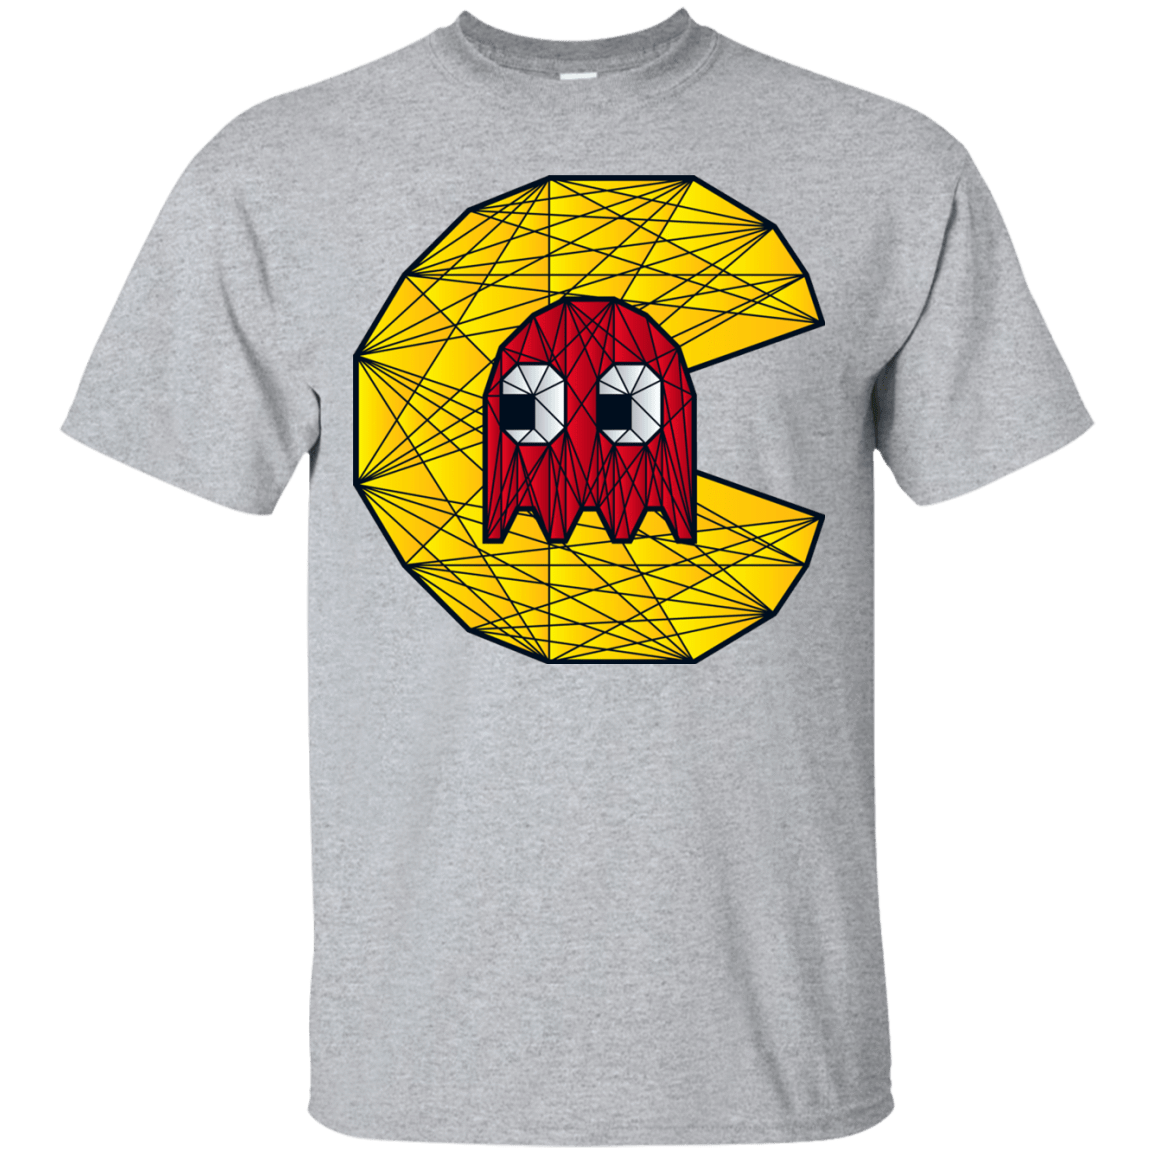 T-Shirts Sport Grey / S Poly Pac Man T-Shirt